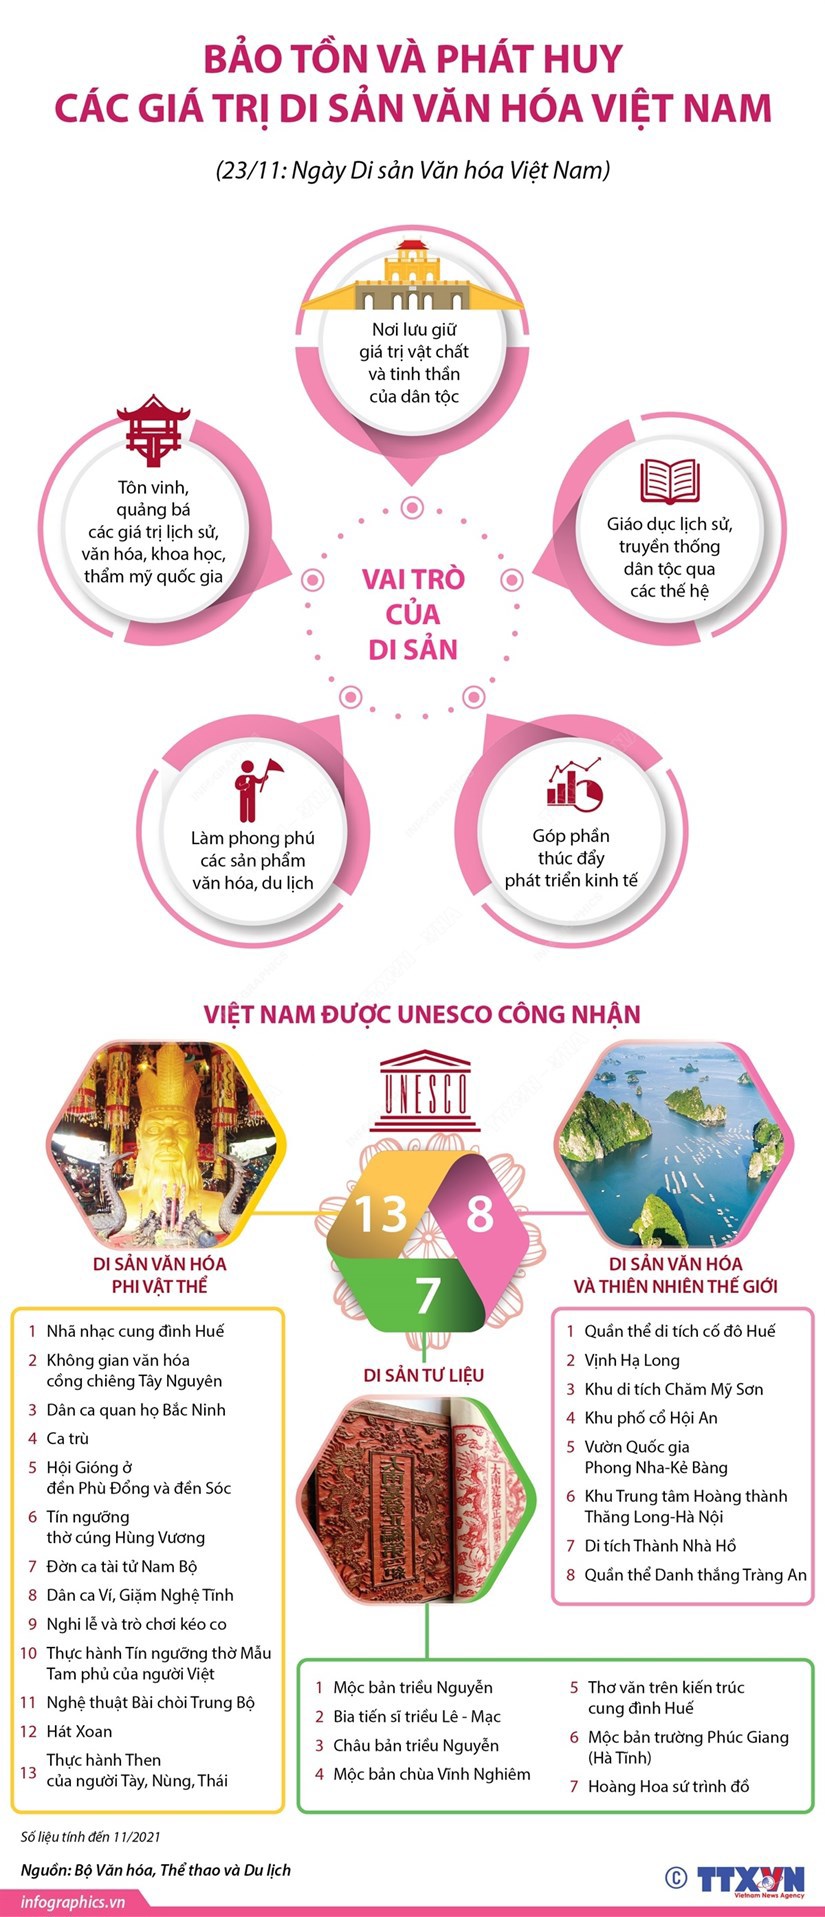 [Infographic] Bảo tồn và phát huy các giá trị di sản văn hóa Việt Nam - Ảnh 1